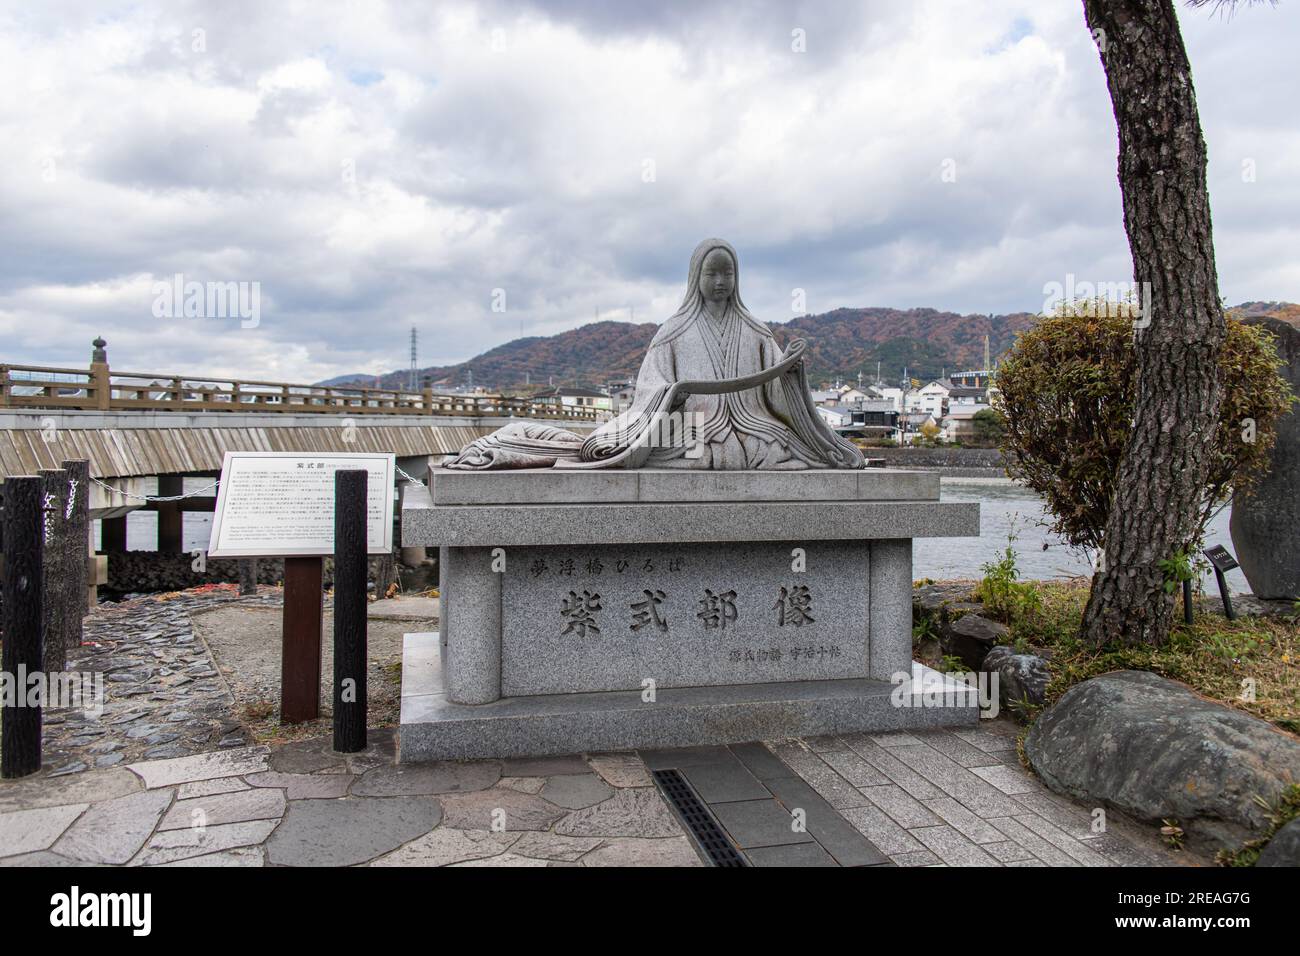 Statua di un romanziere, poeta e dama di compagnia giapponese alla corte dell'era Heian Murasaki Shikibu sul fiume Uji. L'autore de il racconto di Genji Foto Stock